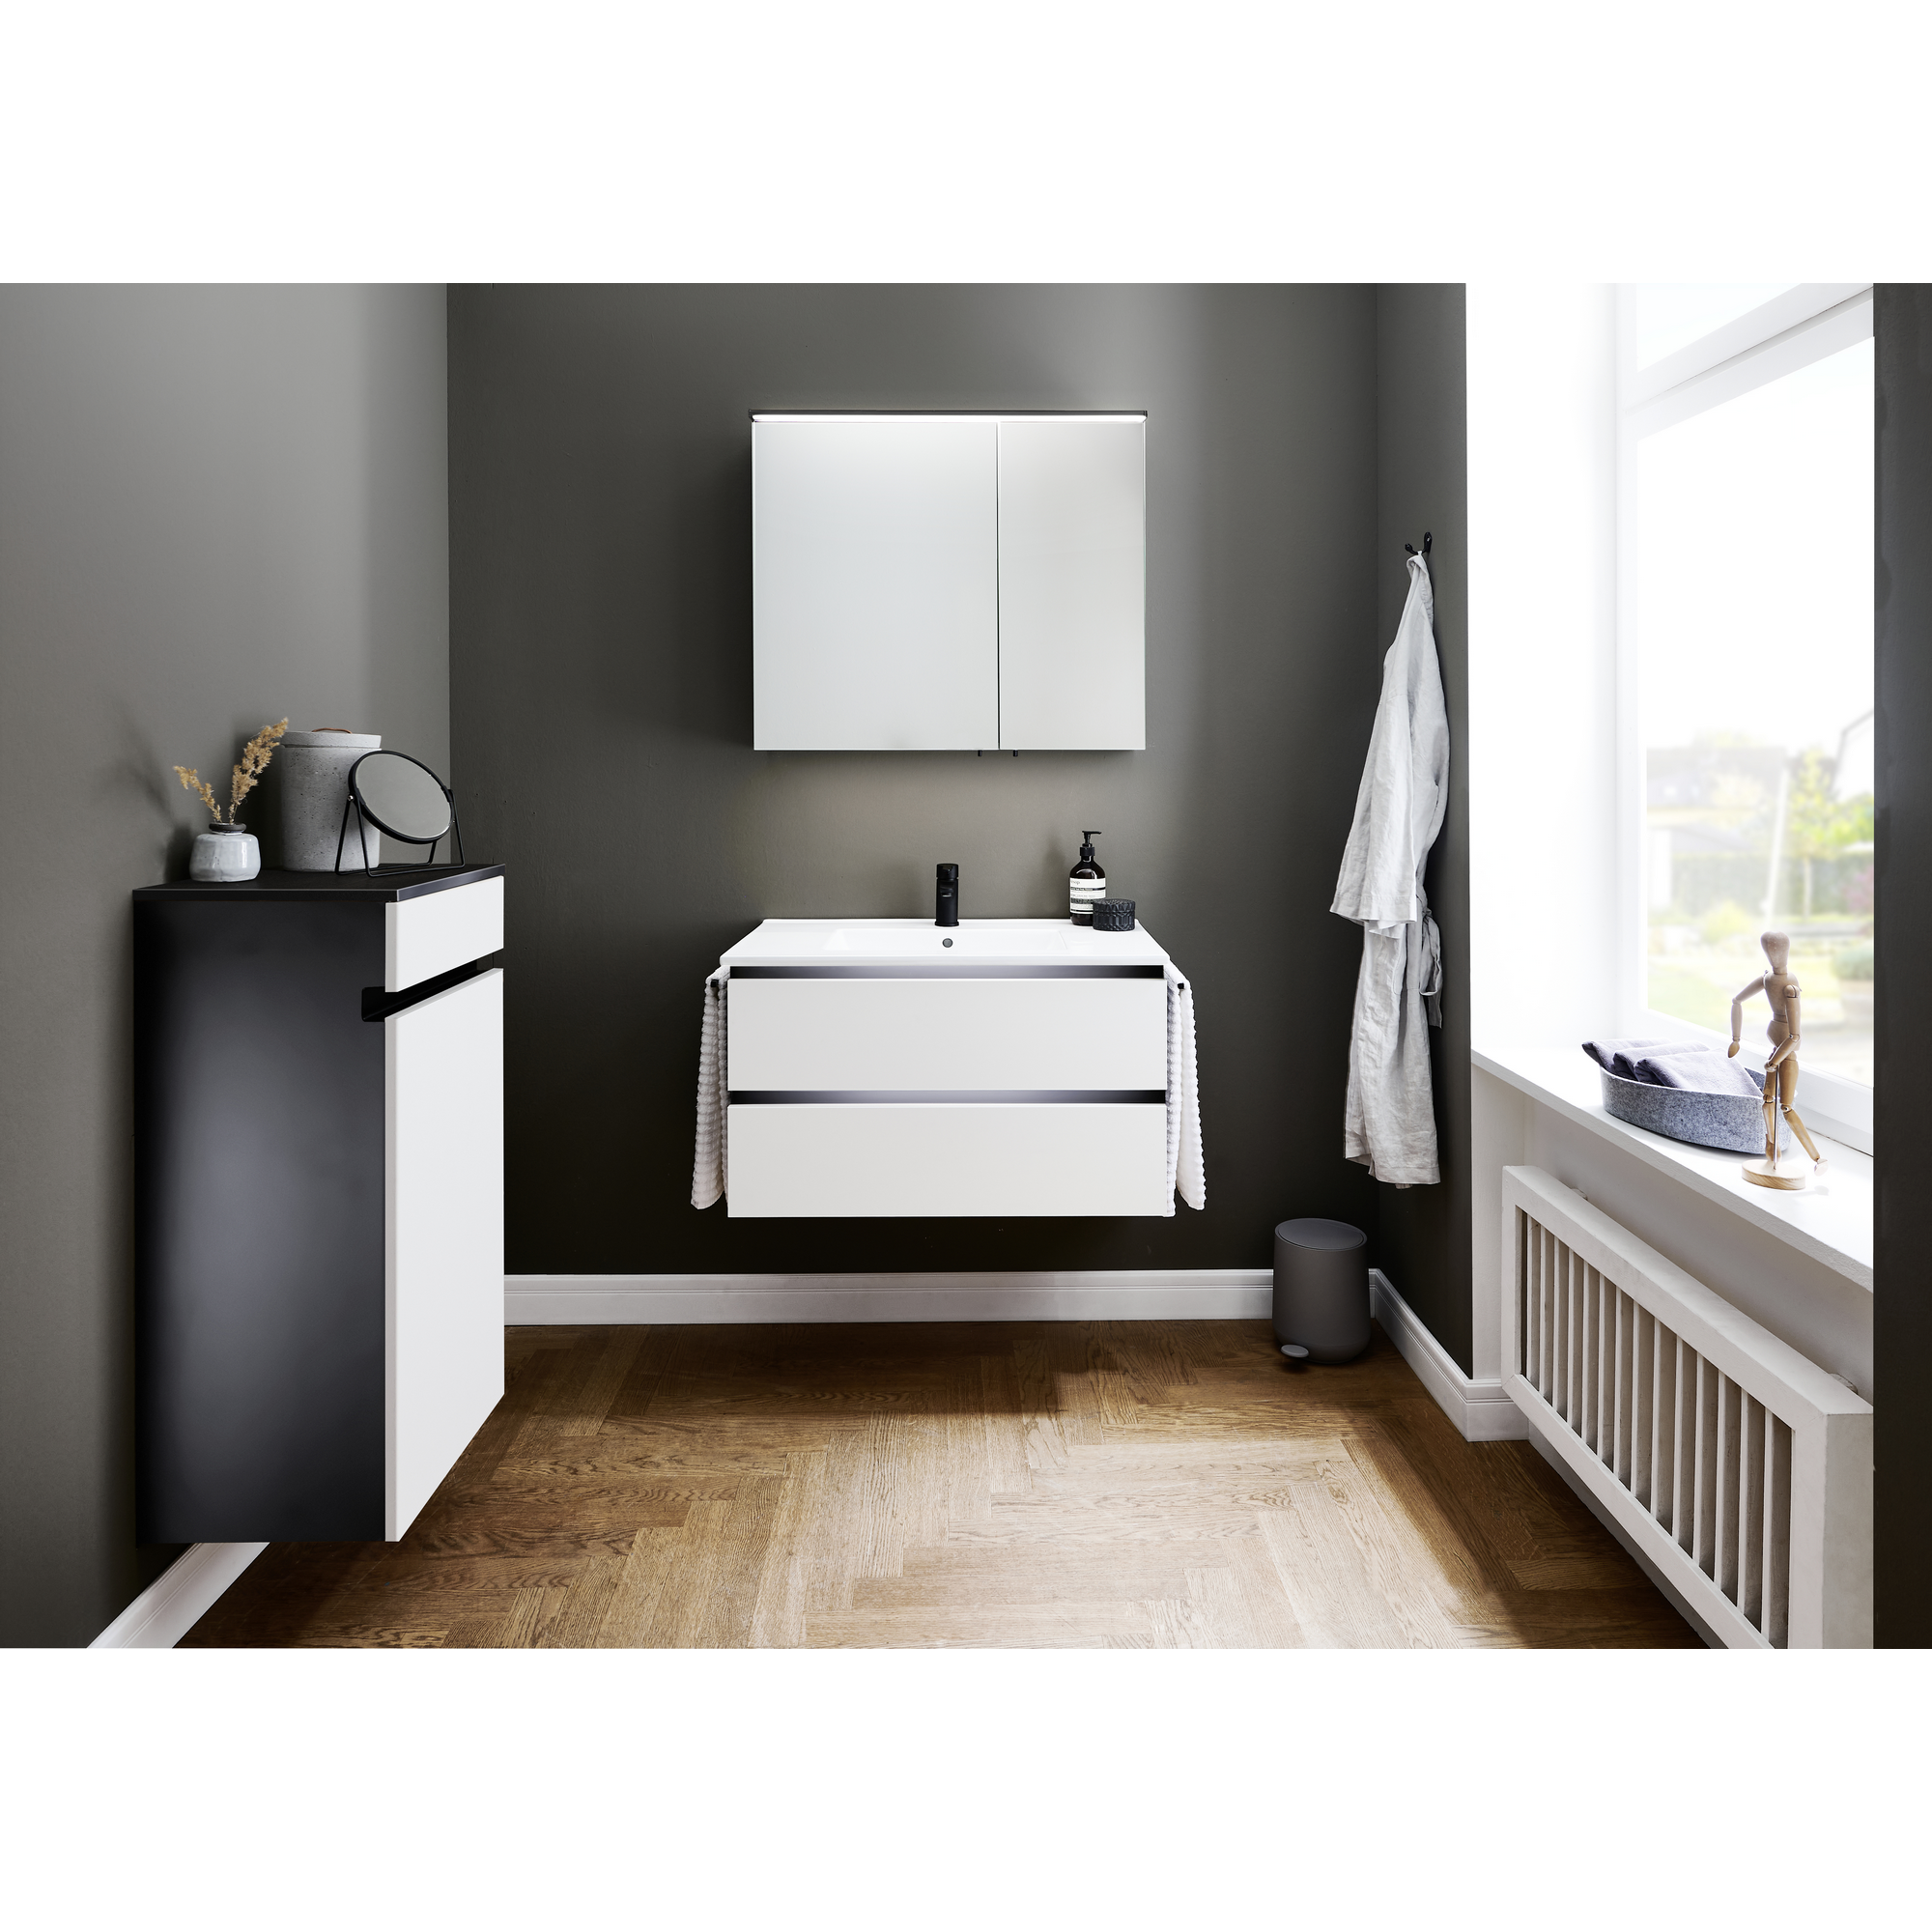 Beistellschrank 'OPTIpremio 2510clarus' weiß, schwarz 40 x 91,2 x 35 cm + product picture